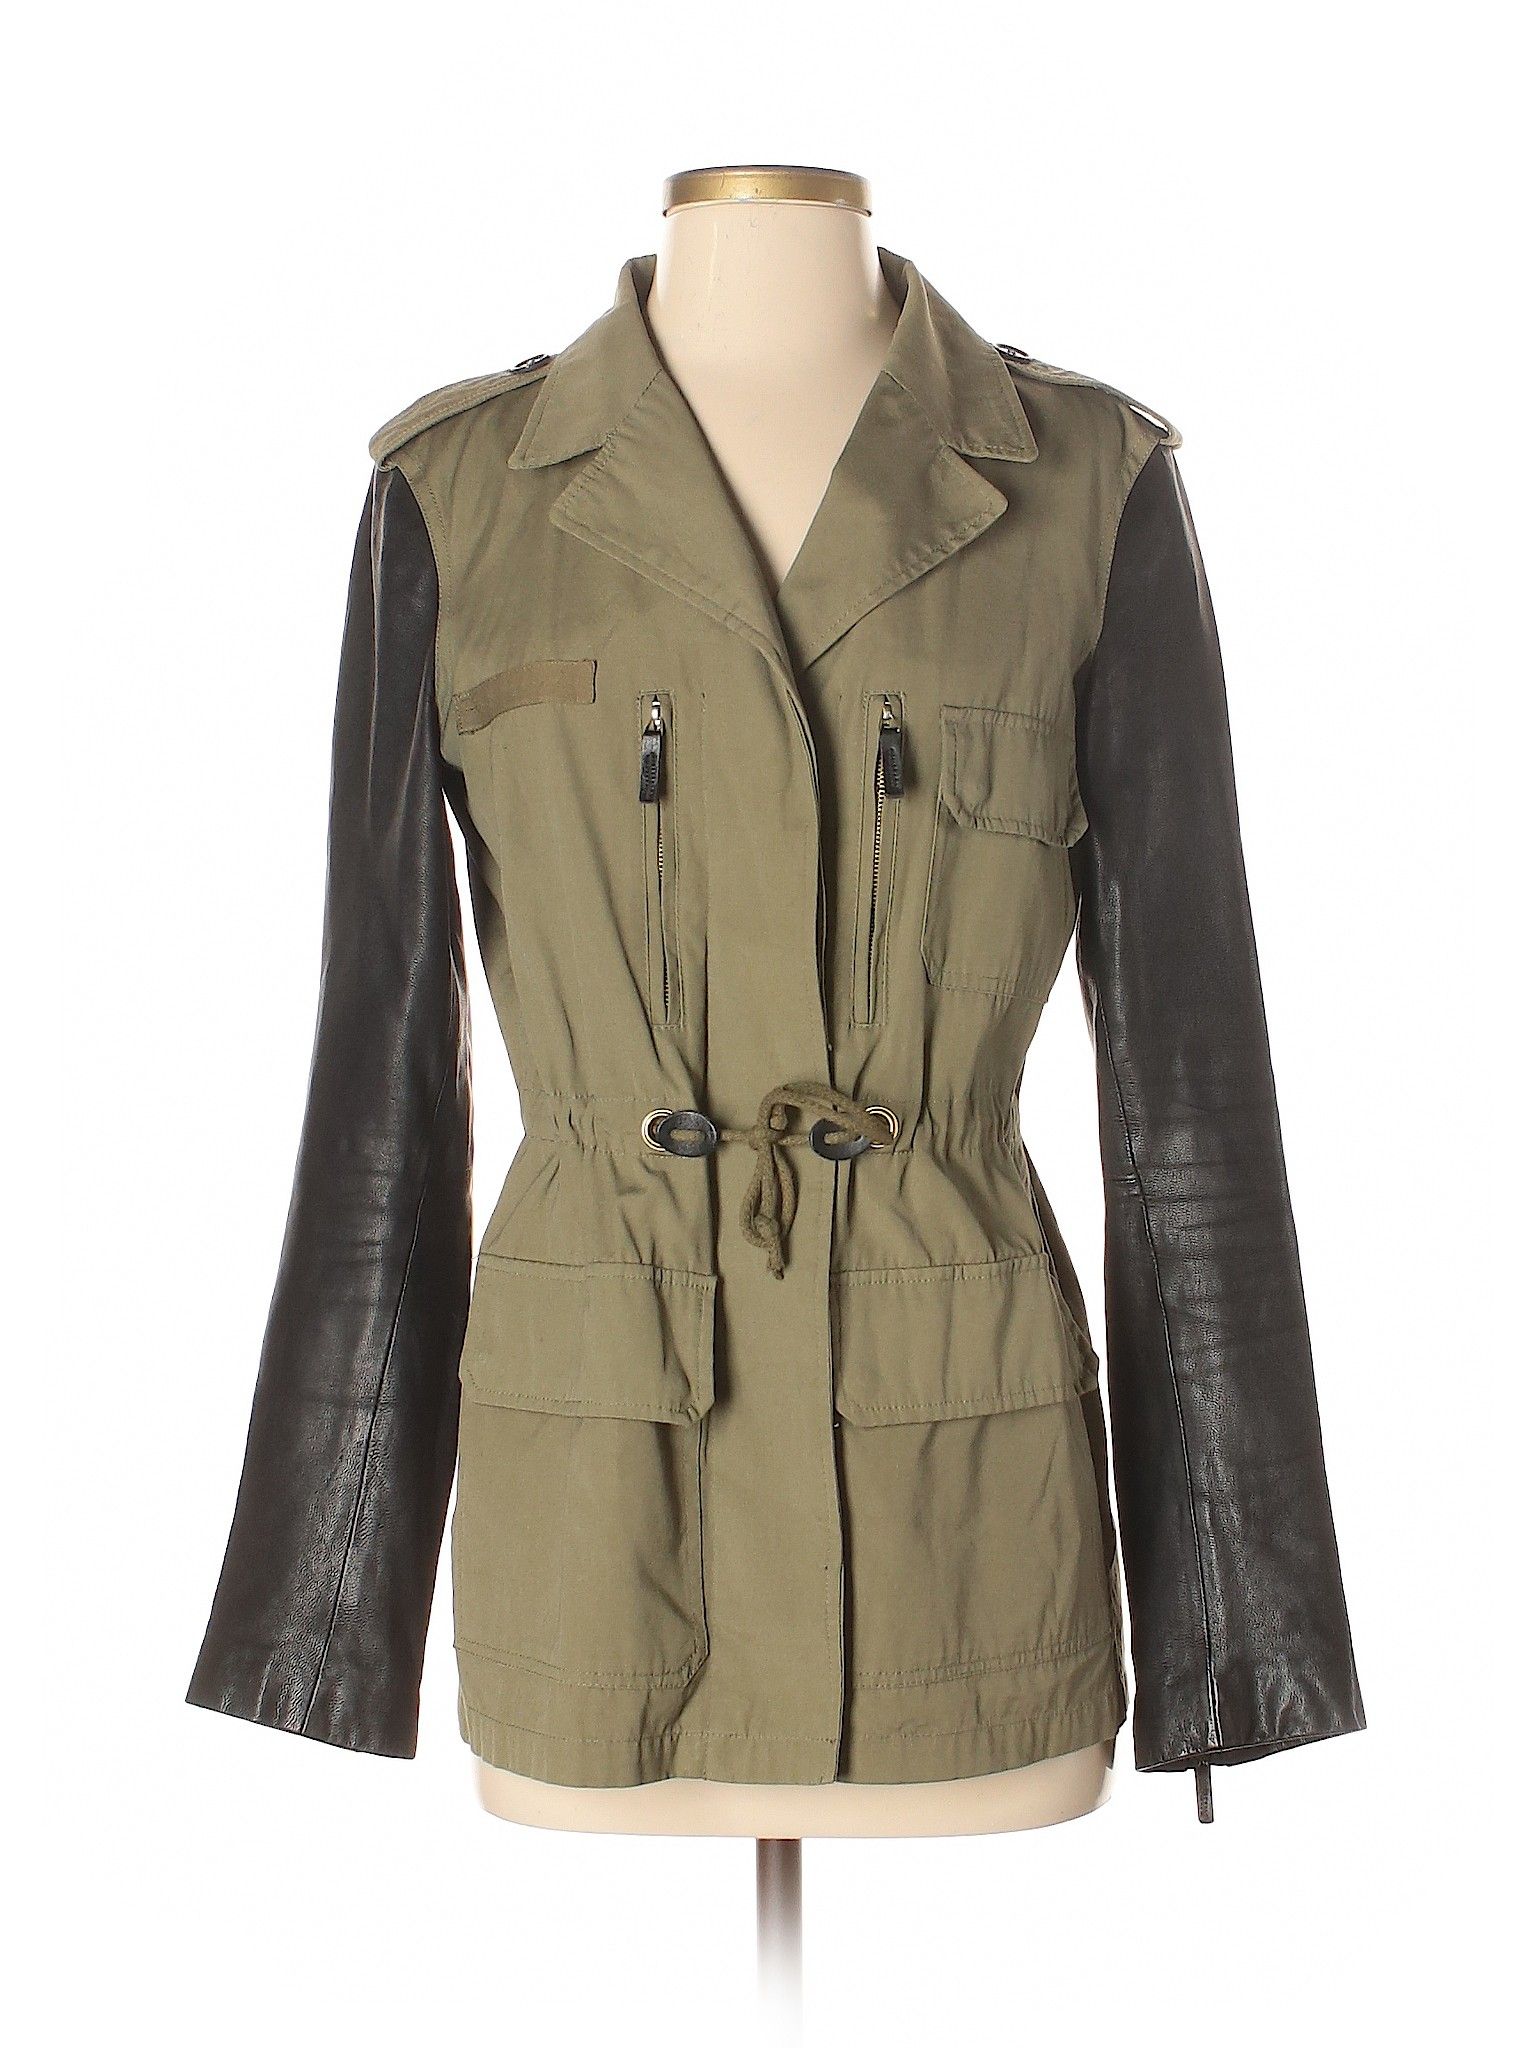 Zara Jacket Size 8: Wild Willow Women's Jackets & Outerwear - 42645626 | thredUP